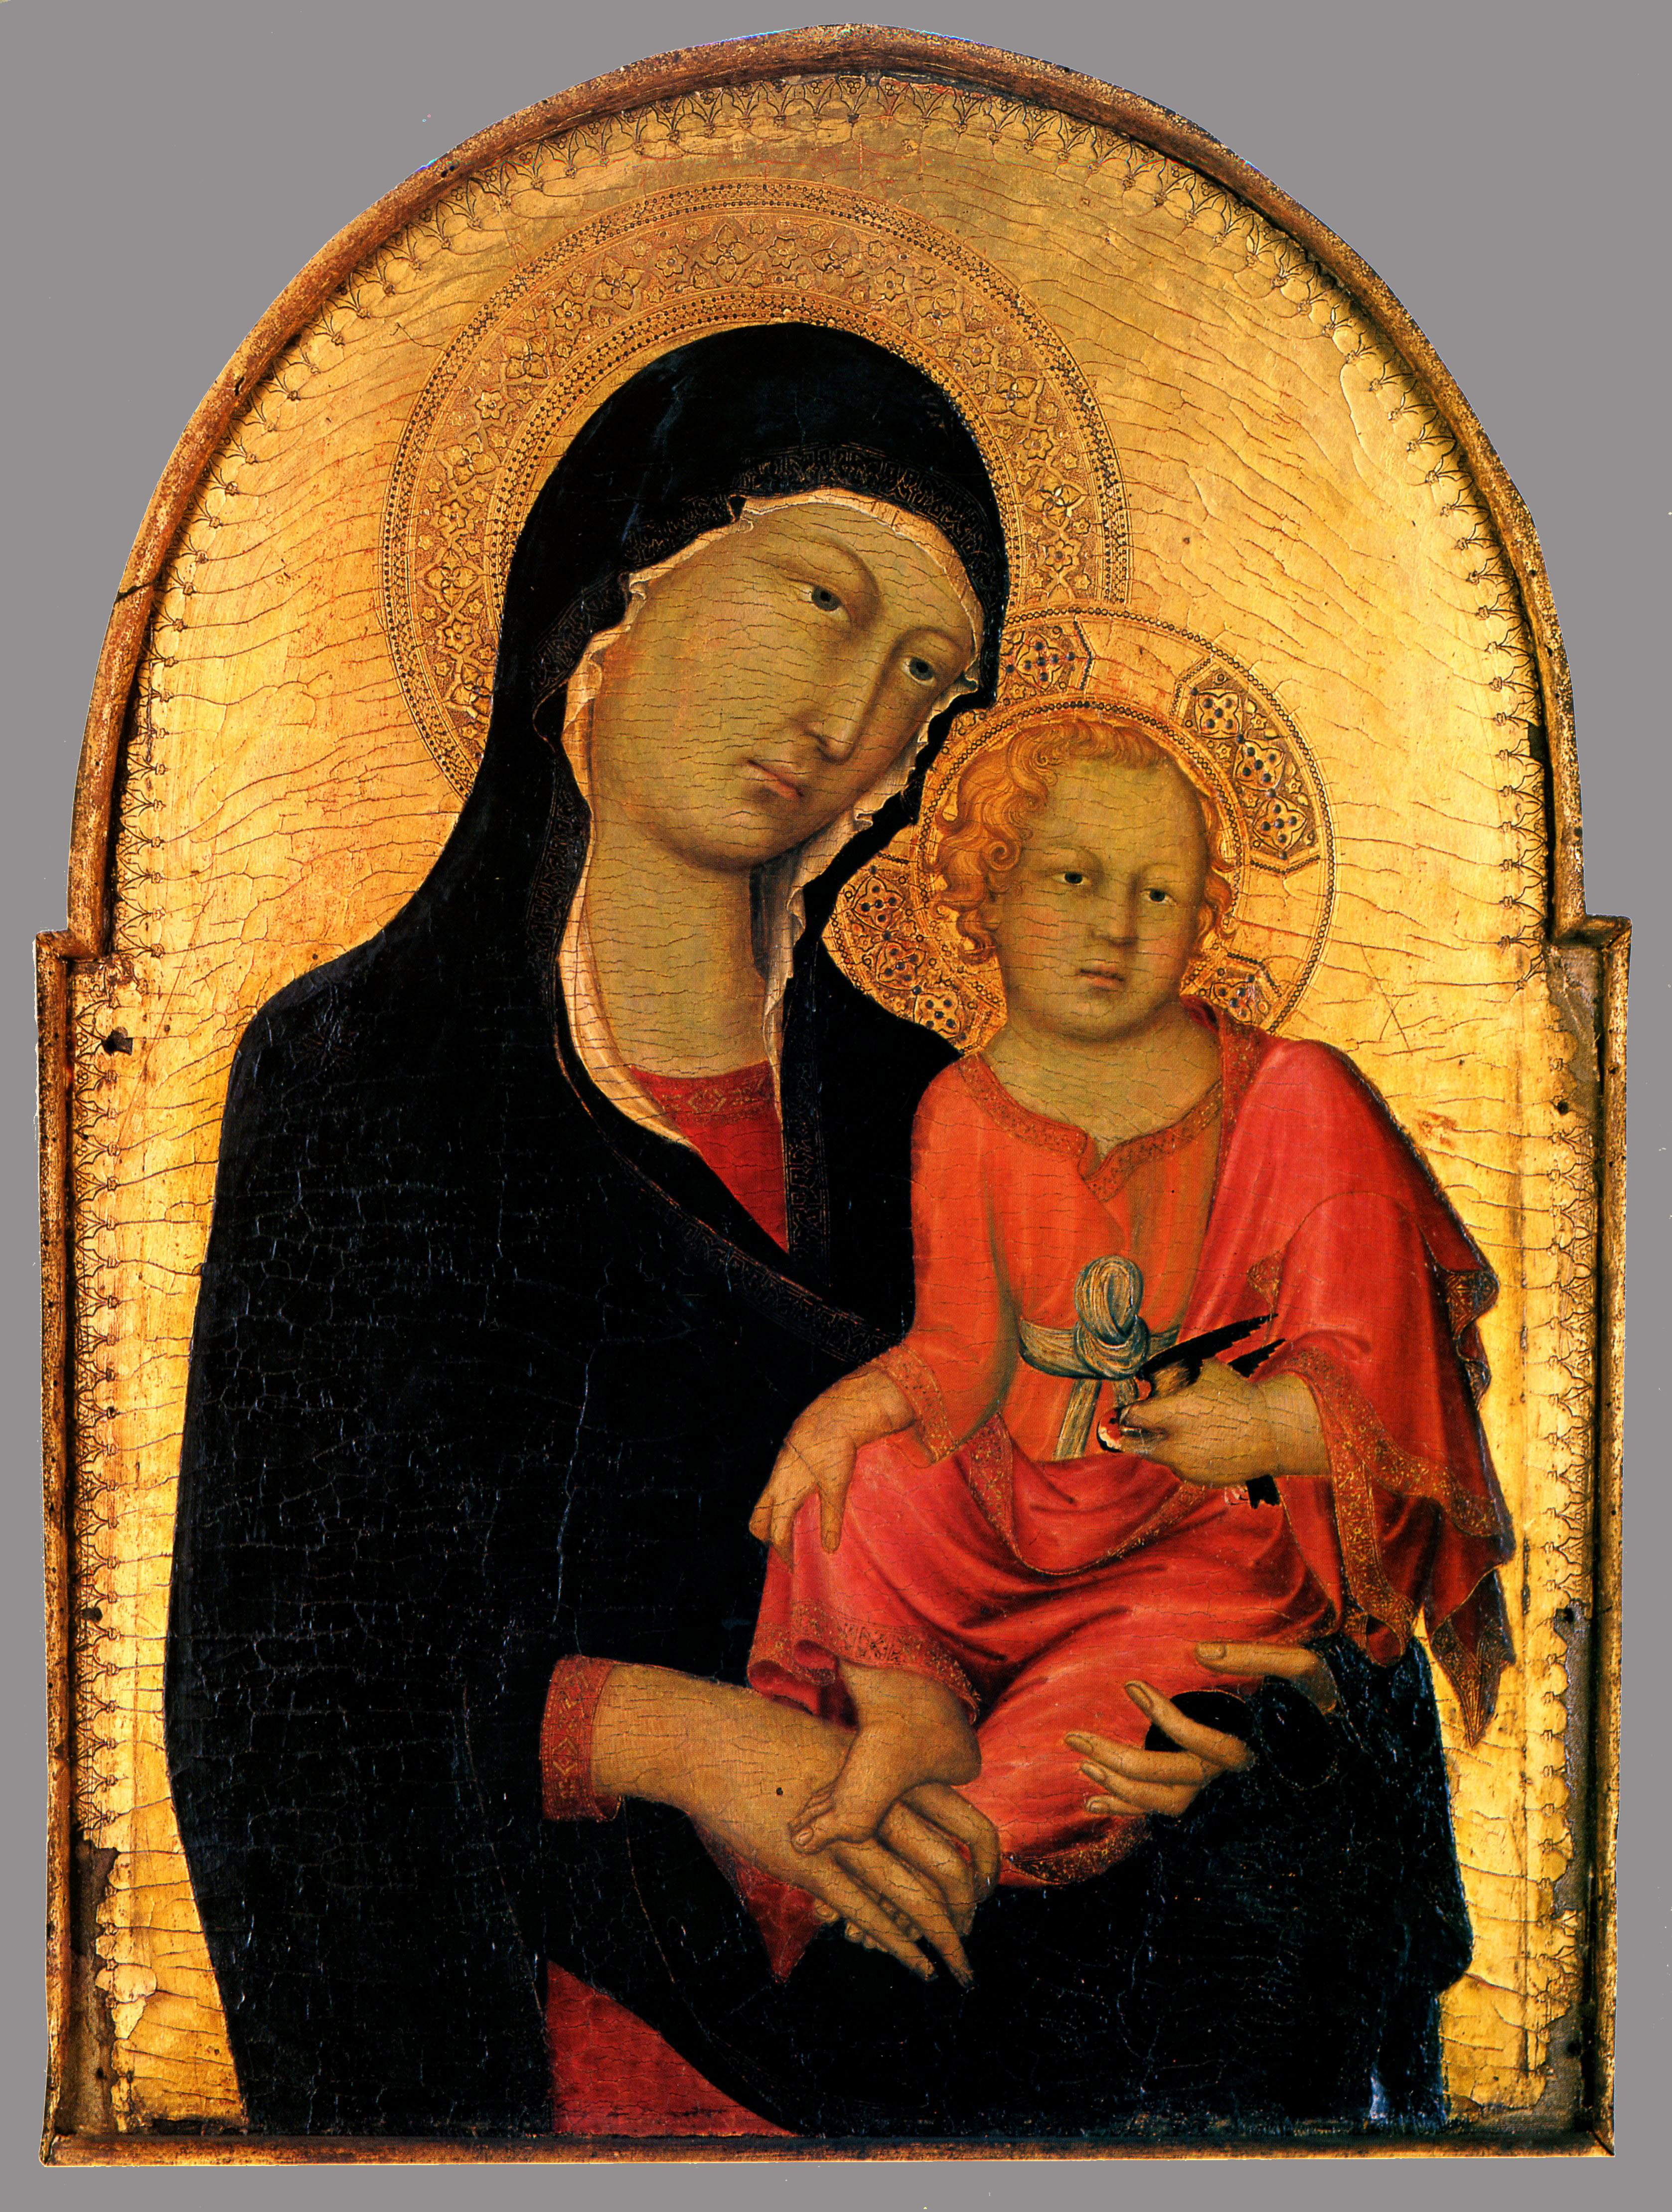 Simone Martini, vers 1280-1344, Vierge à l'enfant, 1325, tempera sur bois, 79,5x57, Wallraf-Richartz Museum, Cologne (1)